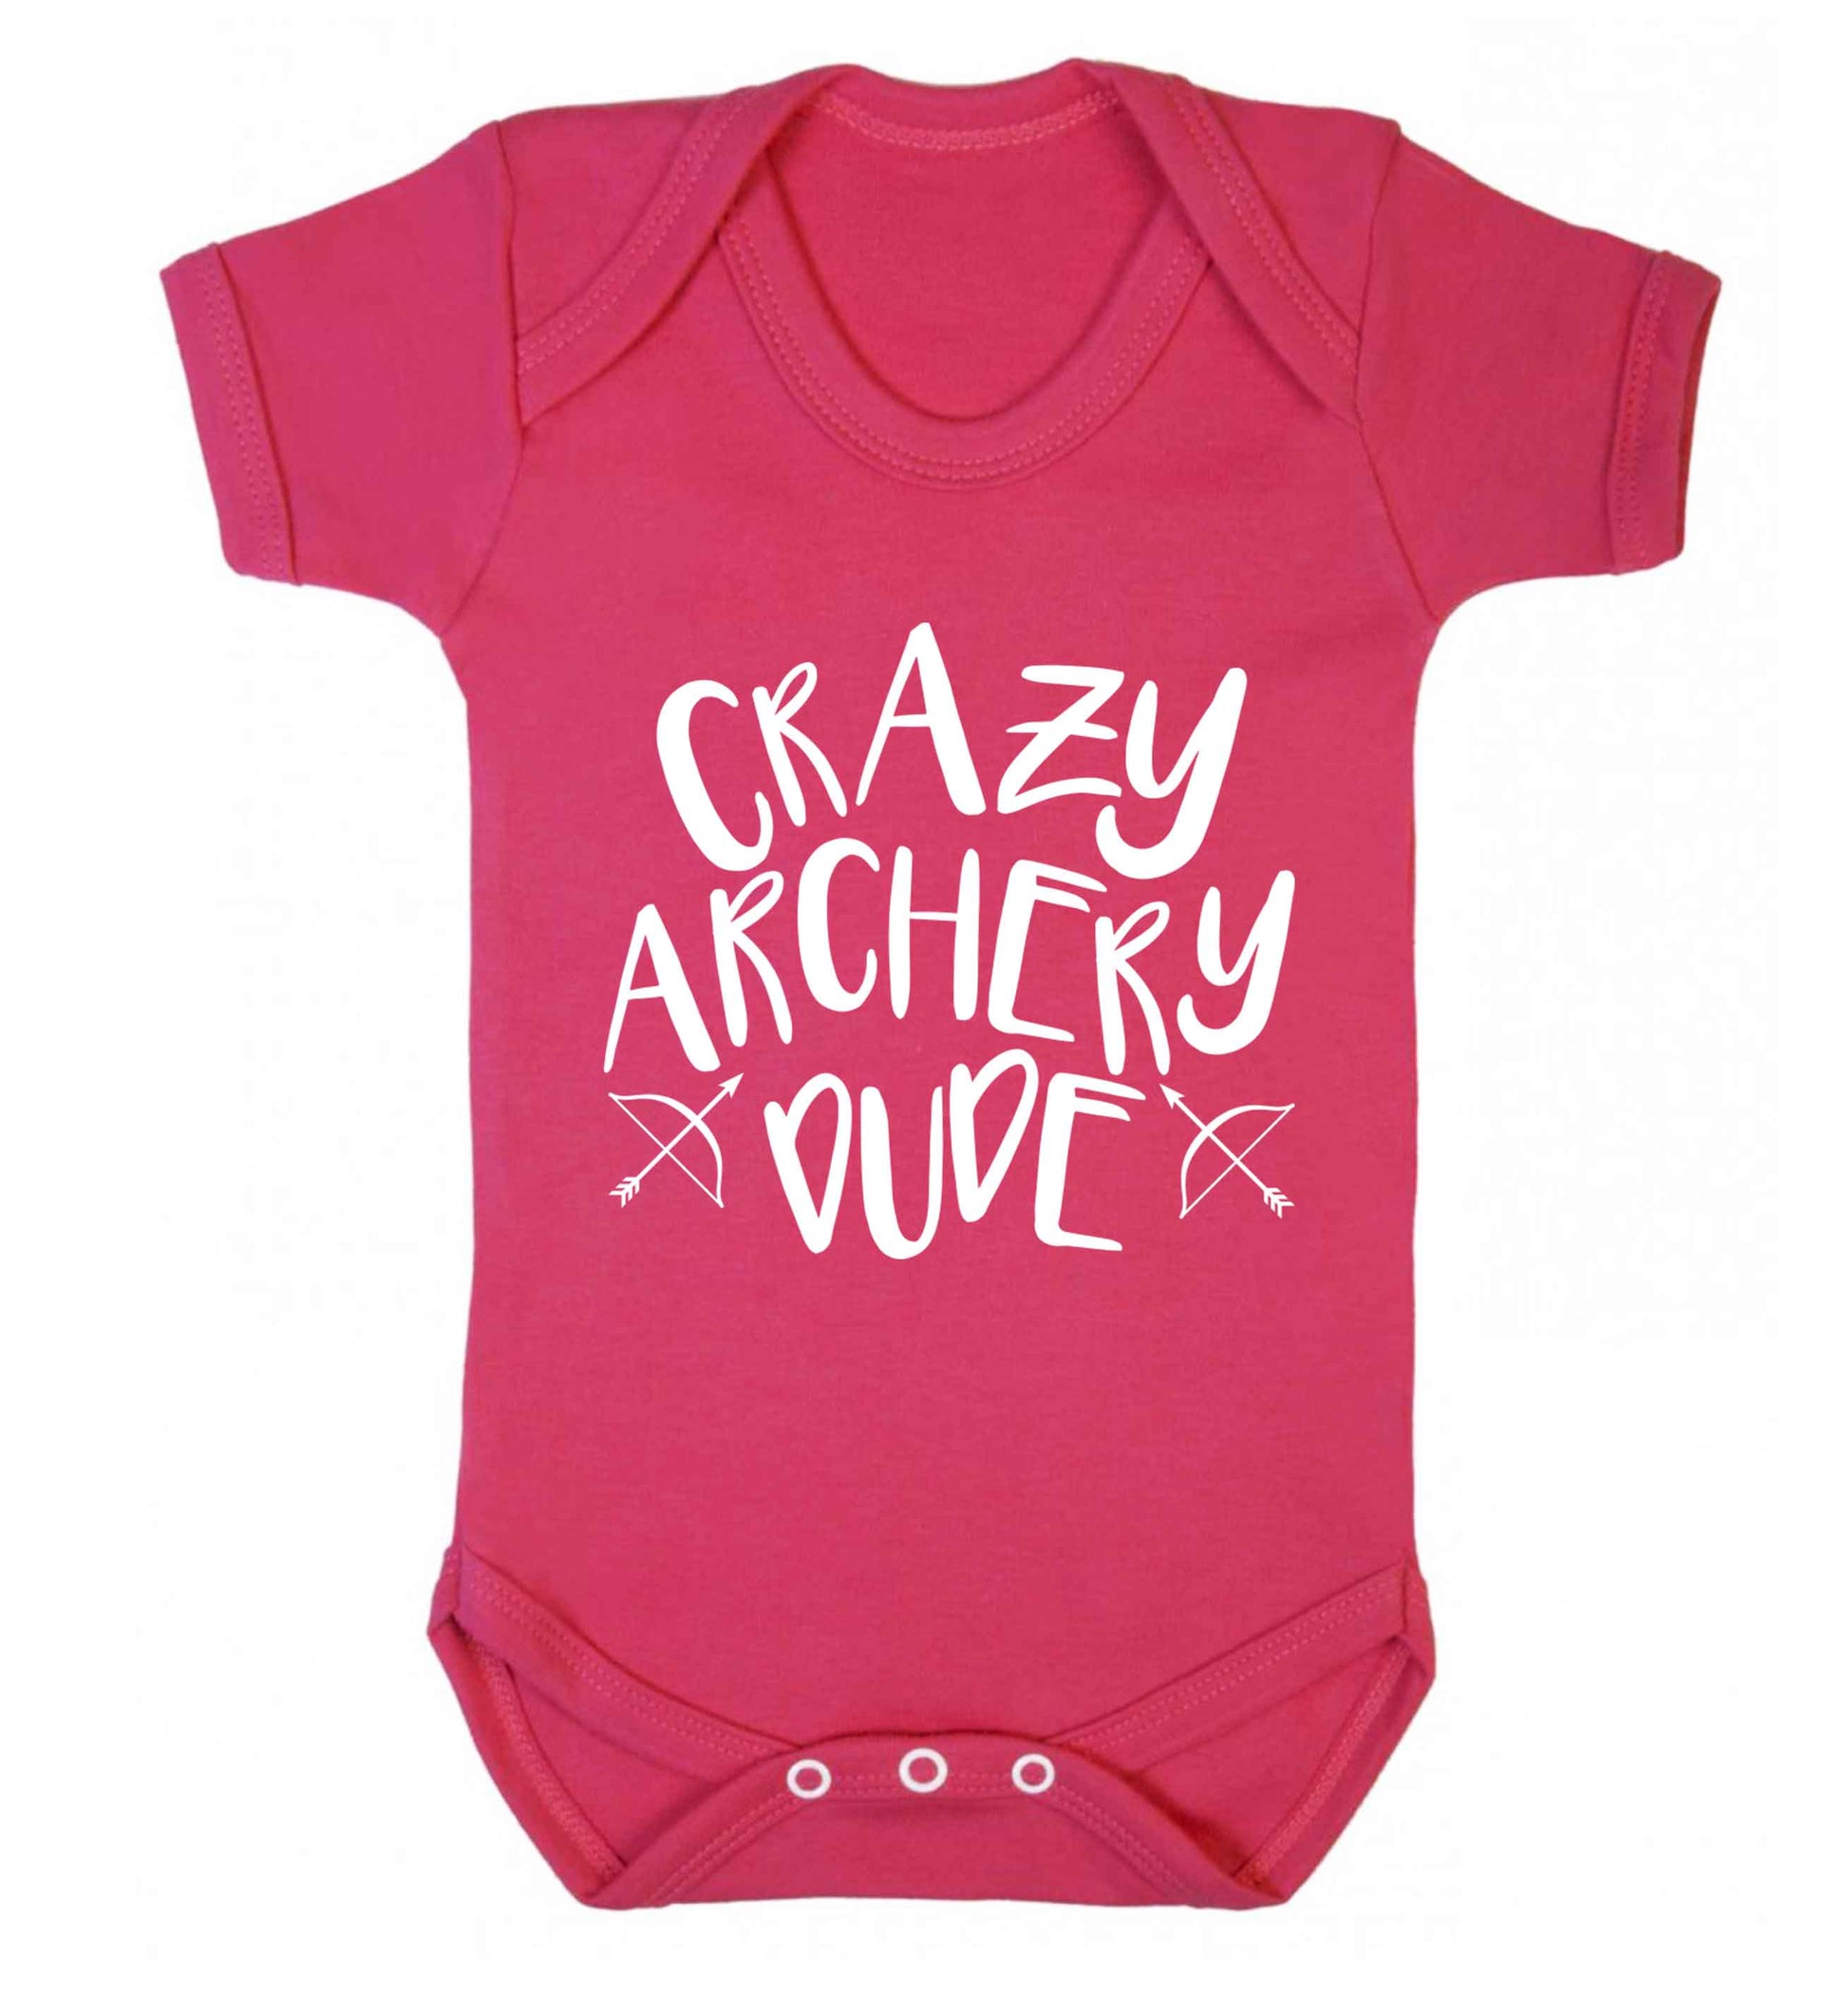 Crazy archery dude Baby Vest dark pink 18-24 months